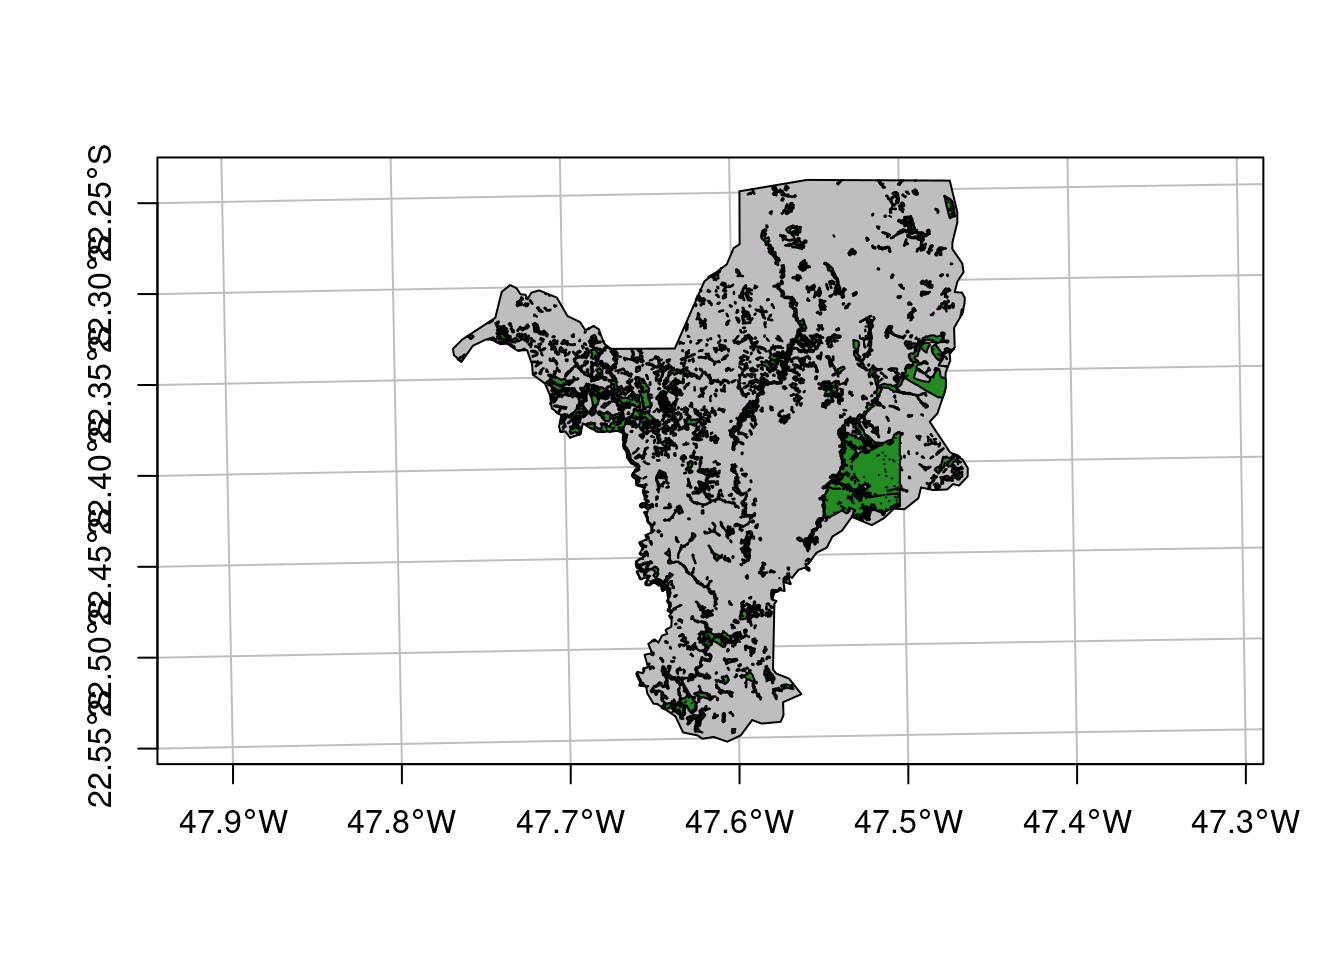 Filtro da classe floresta para o mapeamento de cobertura da terra para o município de Rio Claro/SP.